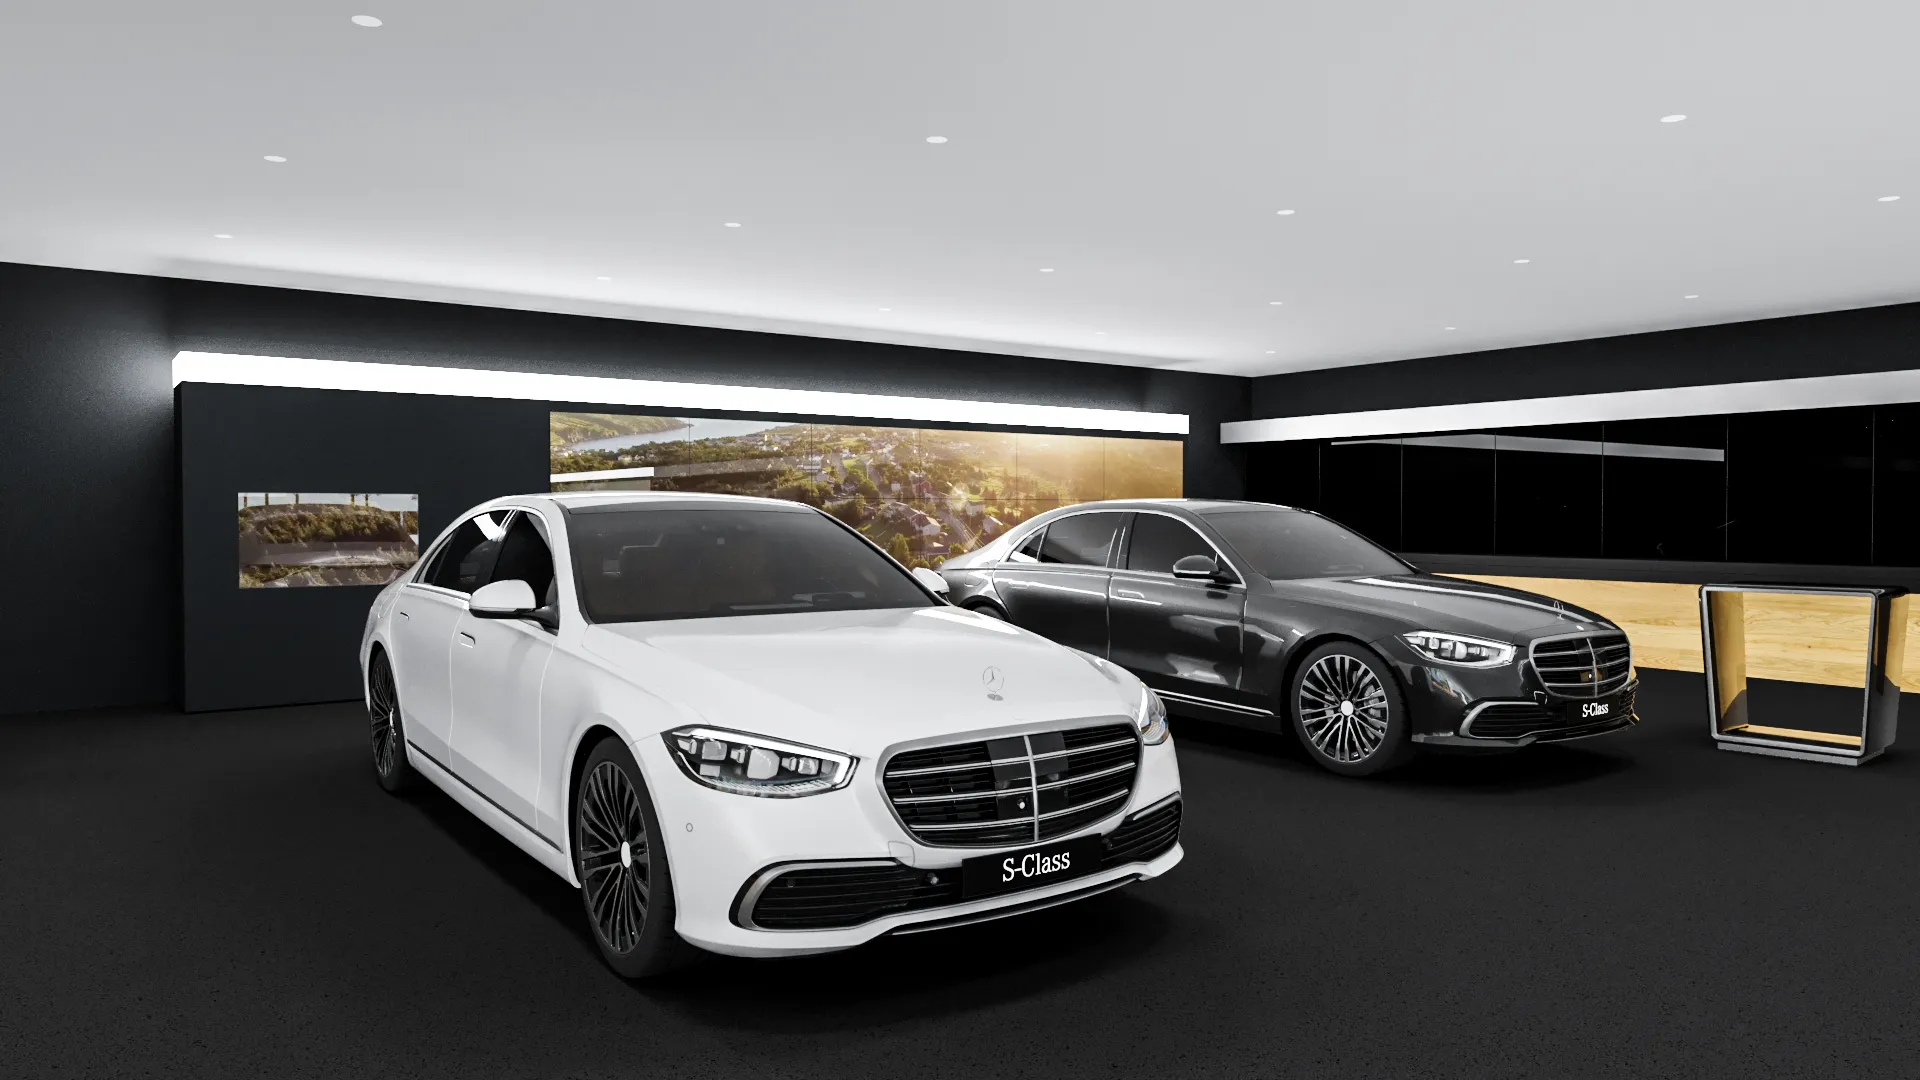 Virtueller Nachbau eines Showroom in dem ein weißer und ein schwarzer Mercedes stehen